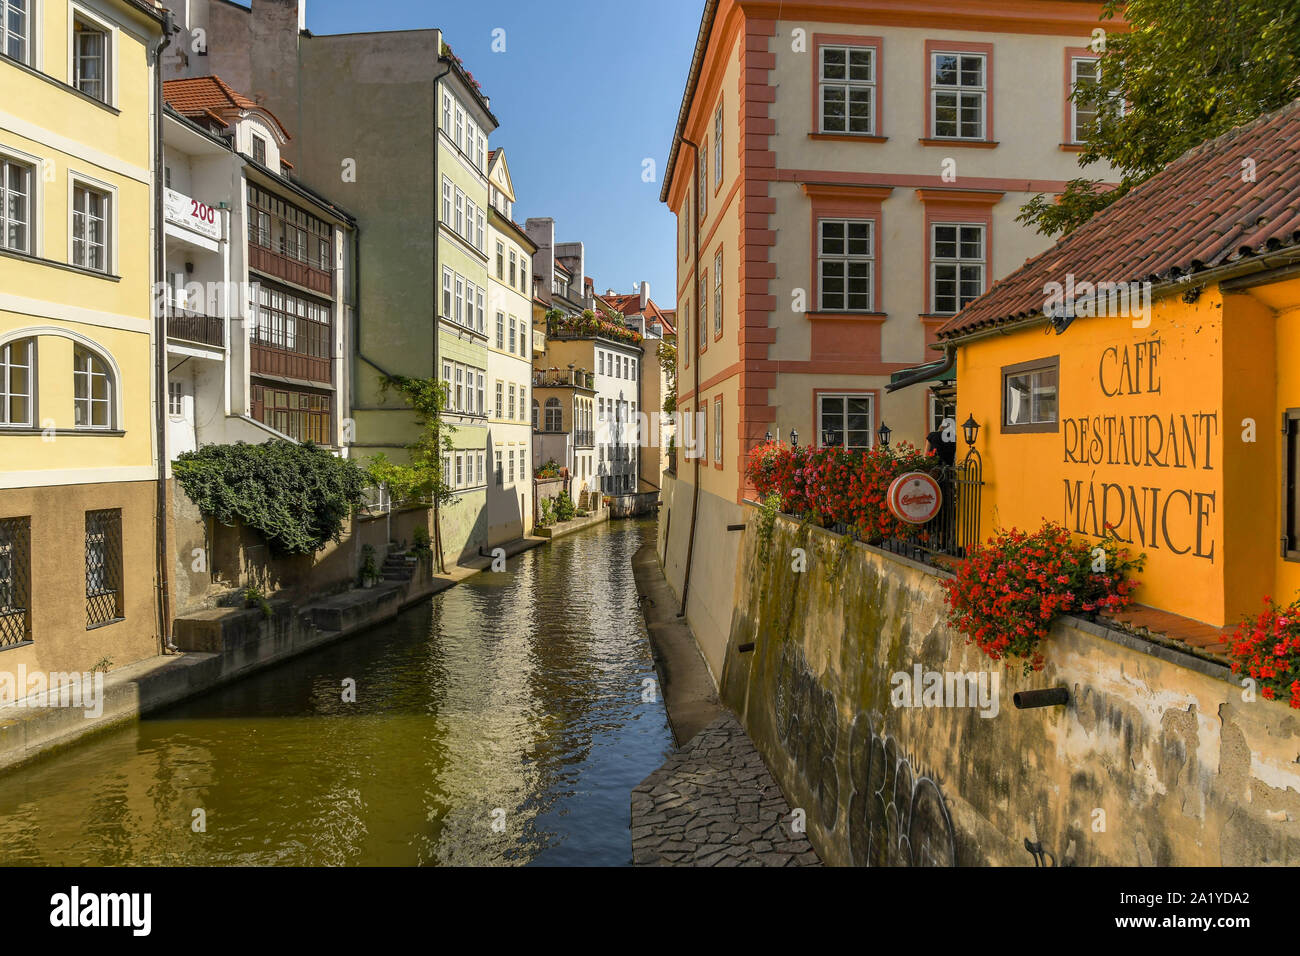 Praga, Repubblica ceca - Luglio 2018: Il Certovka, che è uno stretto canale che corre attraverso il minore quartiere della Città Vecchia di Praga. Foto Stock